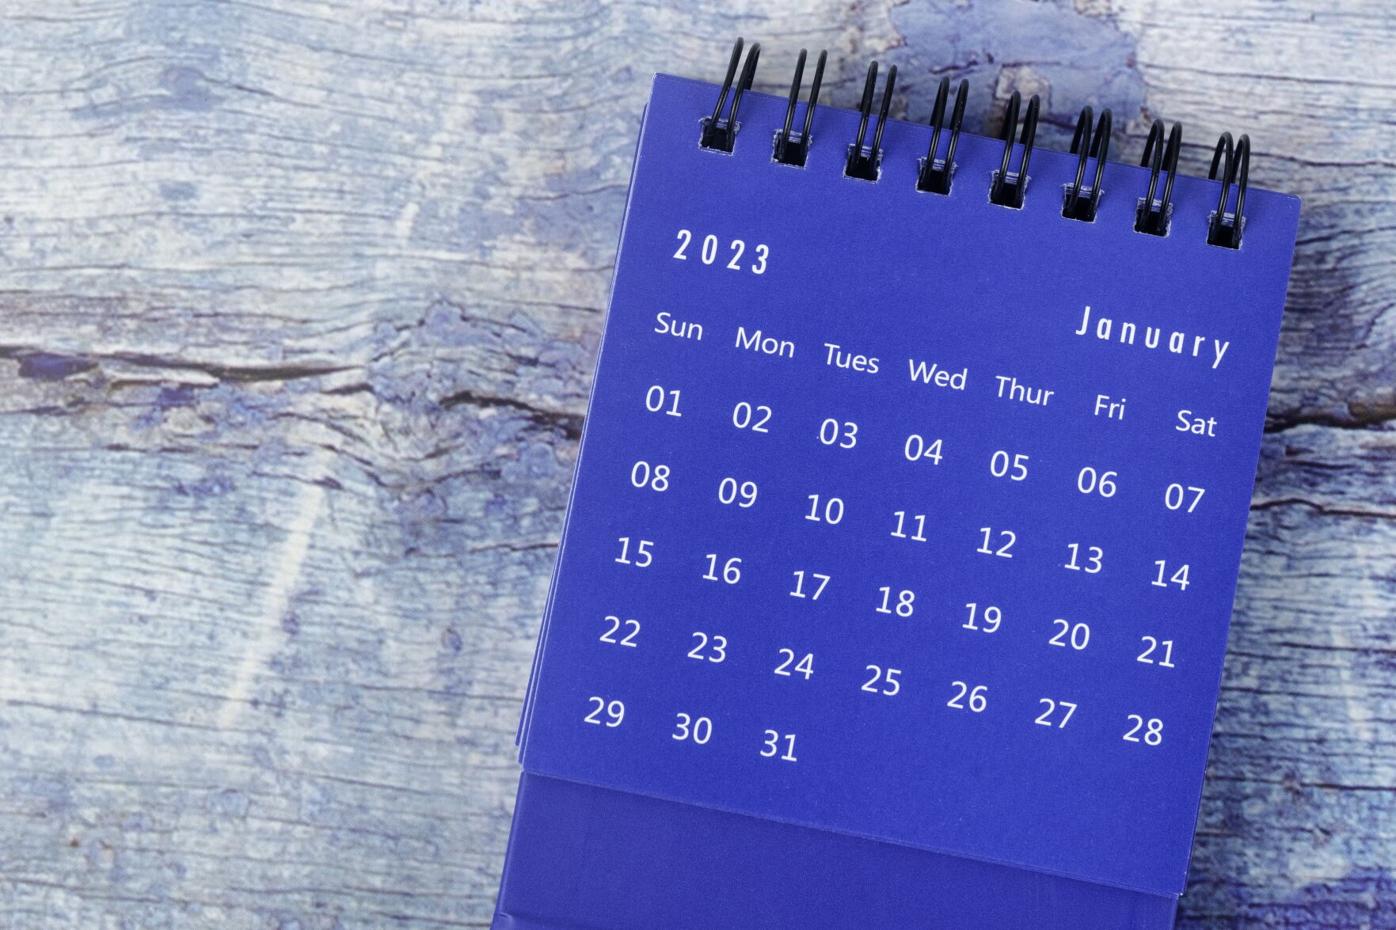 December Faith Practices Calendar 2023 